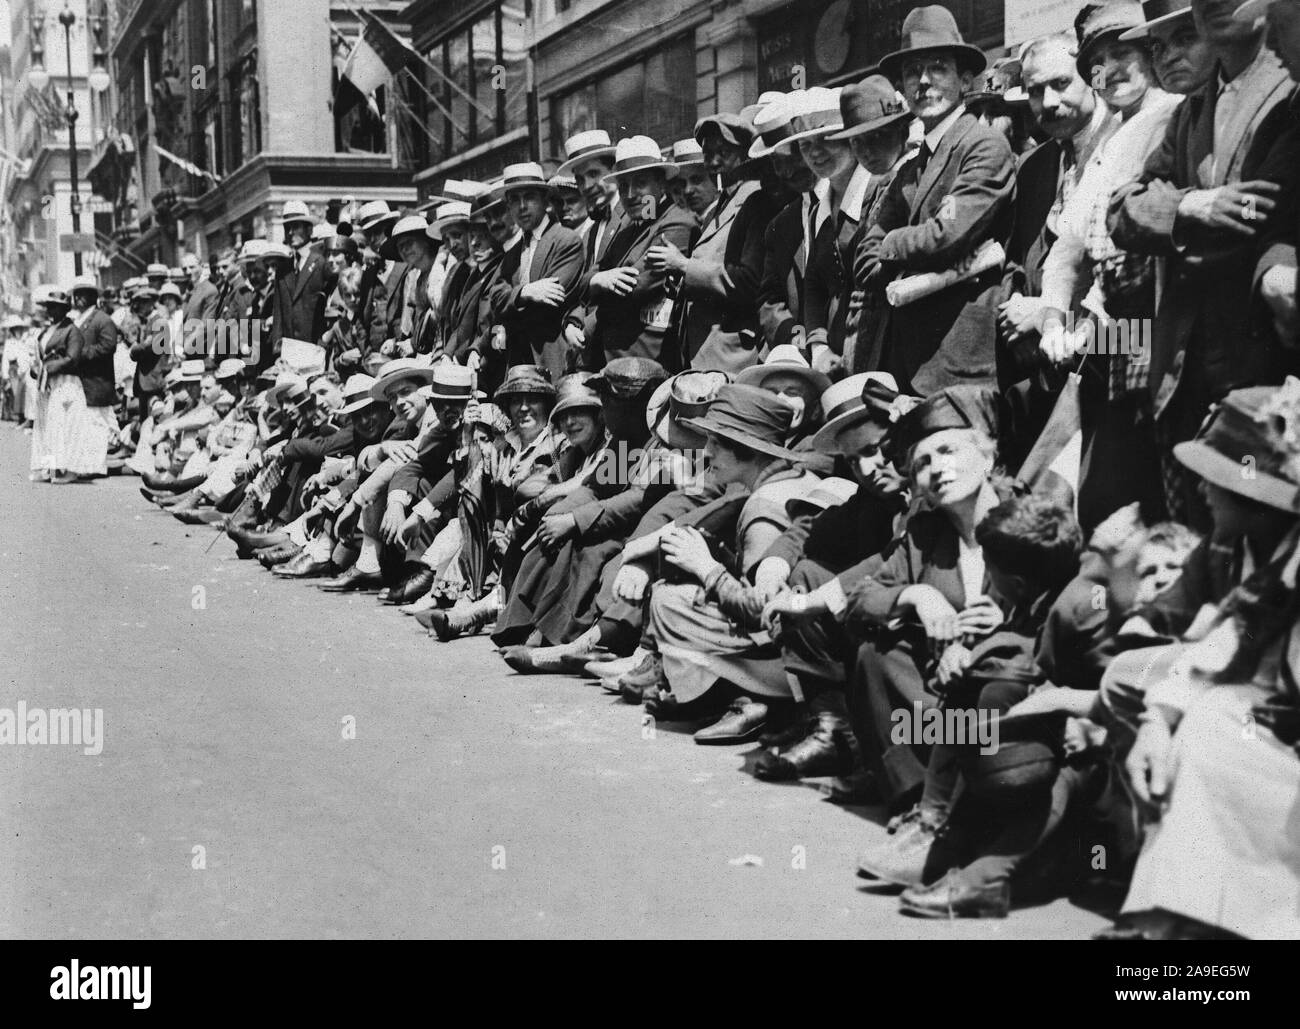 Tag der Unabhängigkeit, 1918 - 4. Juli Parade, 1918, NEW YORK, Größte am 4.Juli Parade in der Geschichte der Vereinigten Staaten gehalten auf der Fifth Avenue. Die erste Sitzreihe, die Bordsteine, sehnsüchtig von vielen Menschen, die Hell und früh kam das Monster am 4.Juli Parade auf der Fifth Avenue in New York City zu beobachten beschlagnahmt wurden. Stockfoto